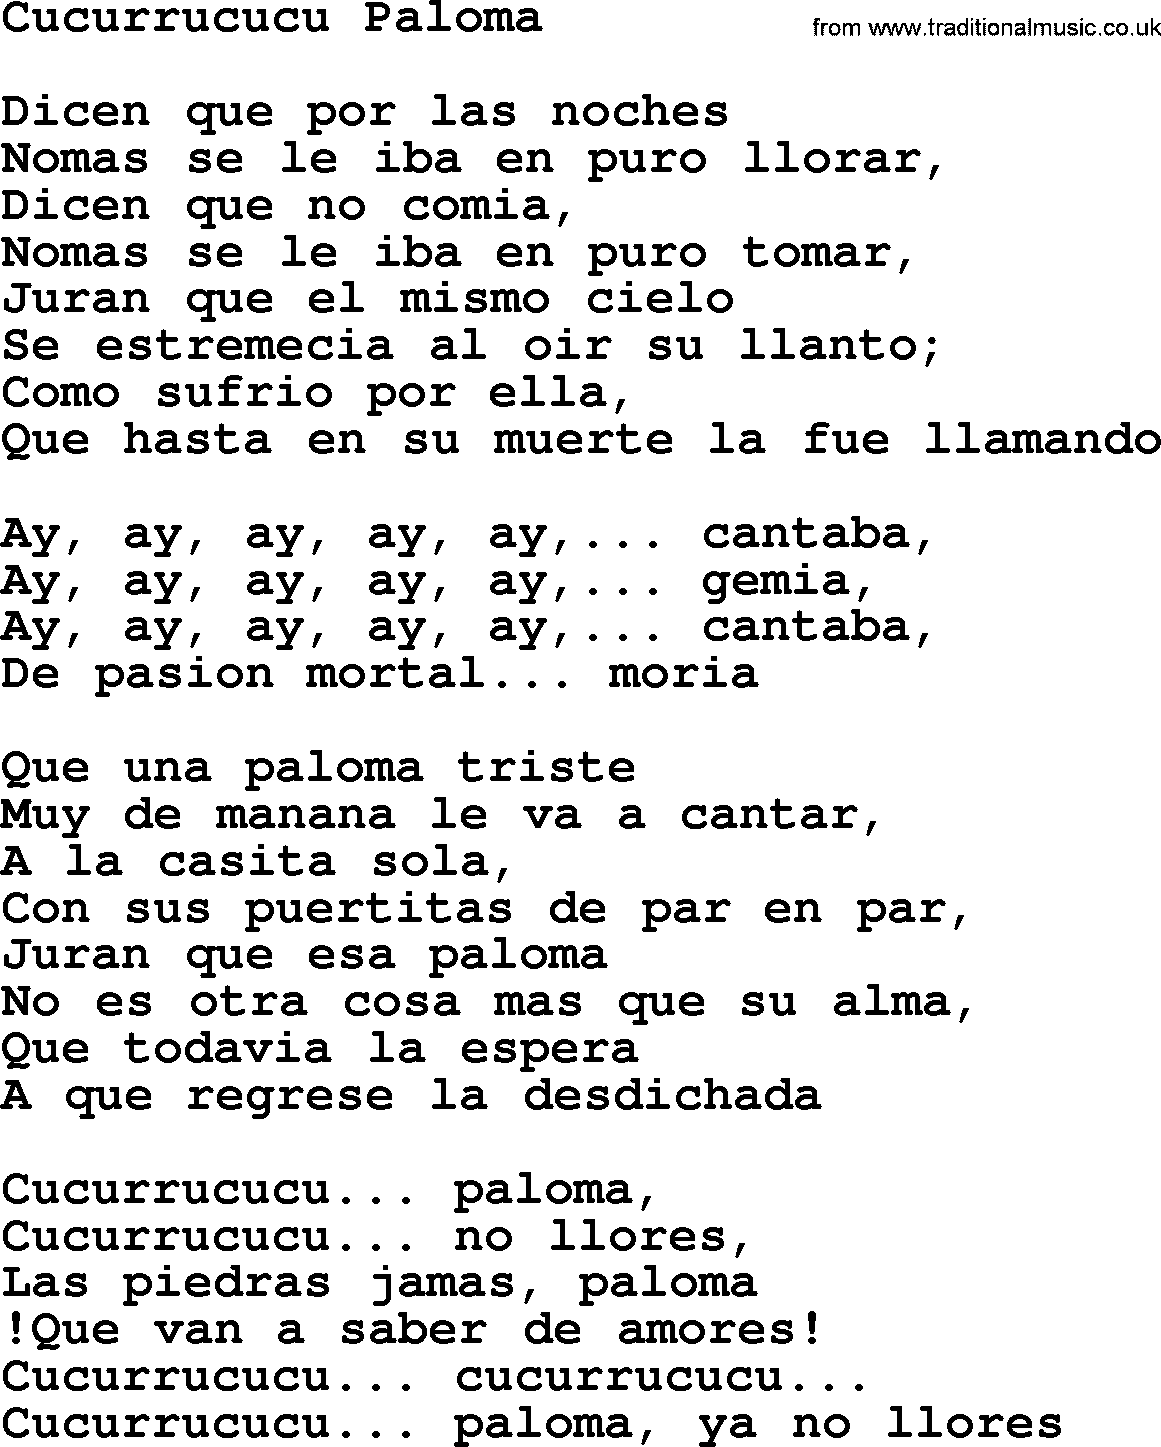 Joan Baez song Cucurrucucu Paloma, lyrics